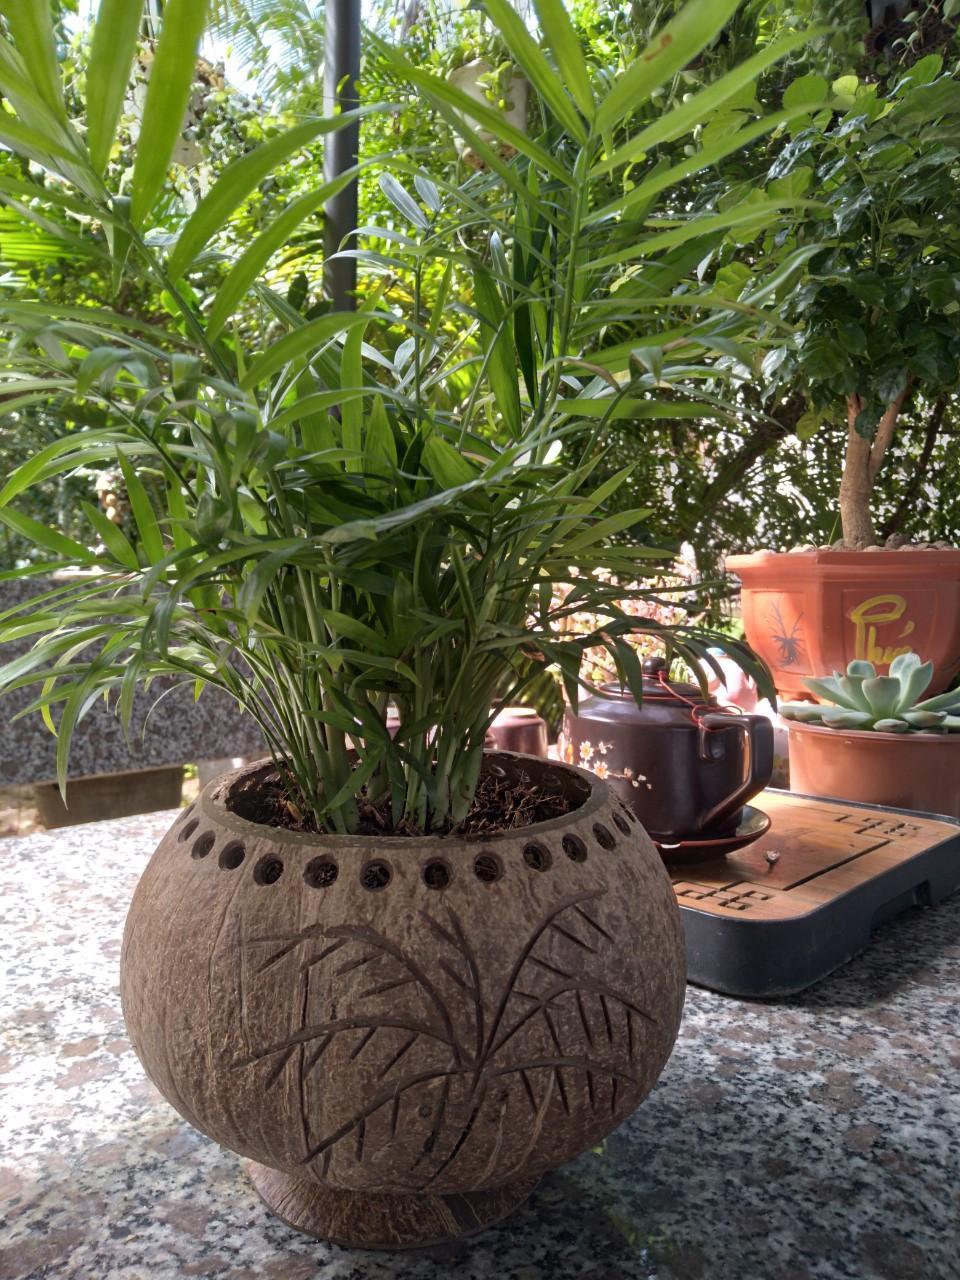 Chậu trồng cây gáo dừa để bàn mộc mạc thân thiện với môi trường